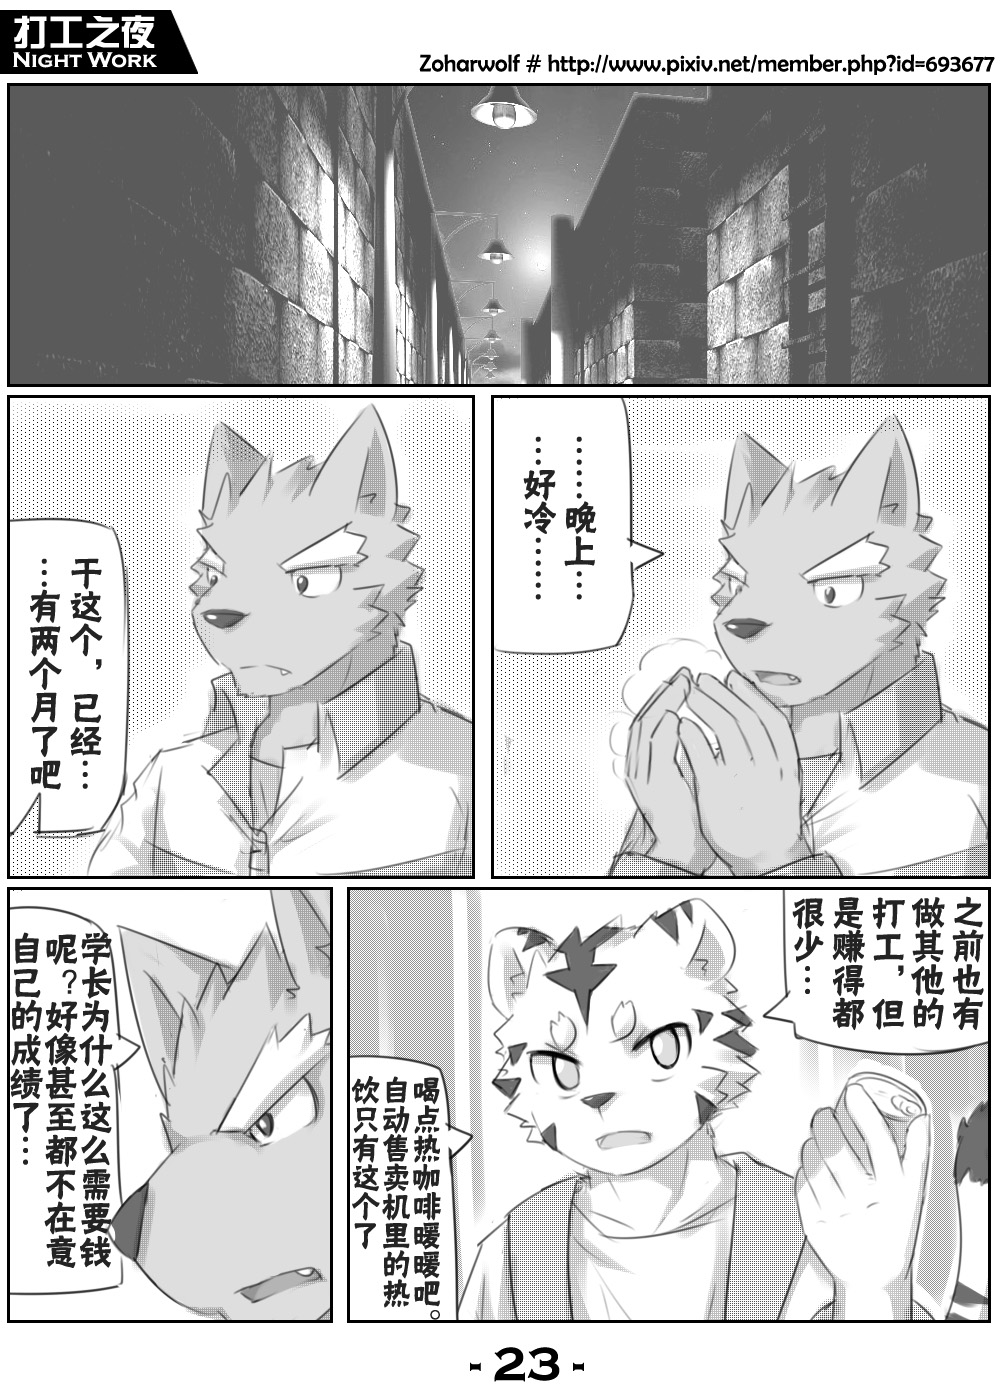 【漫画】打工之夜 [zoharwolf] 打工之夜 [中国語]